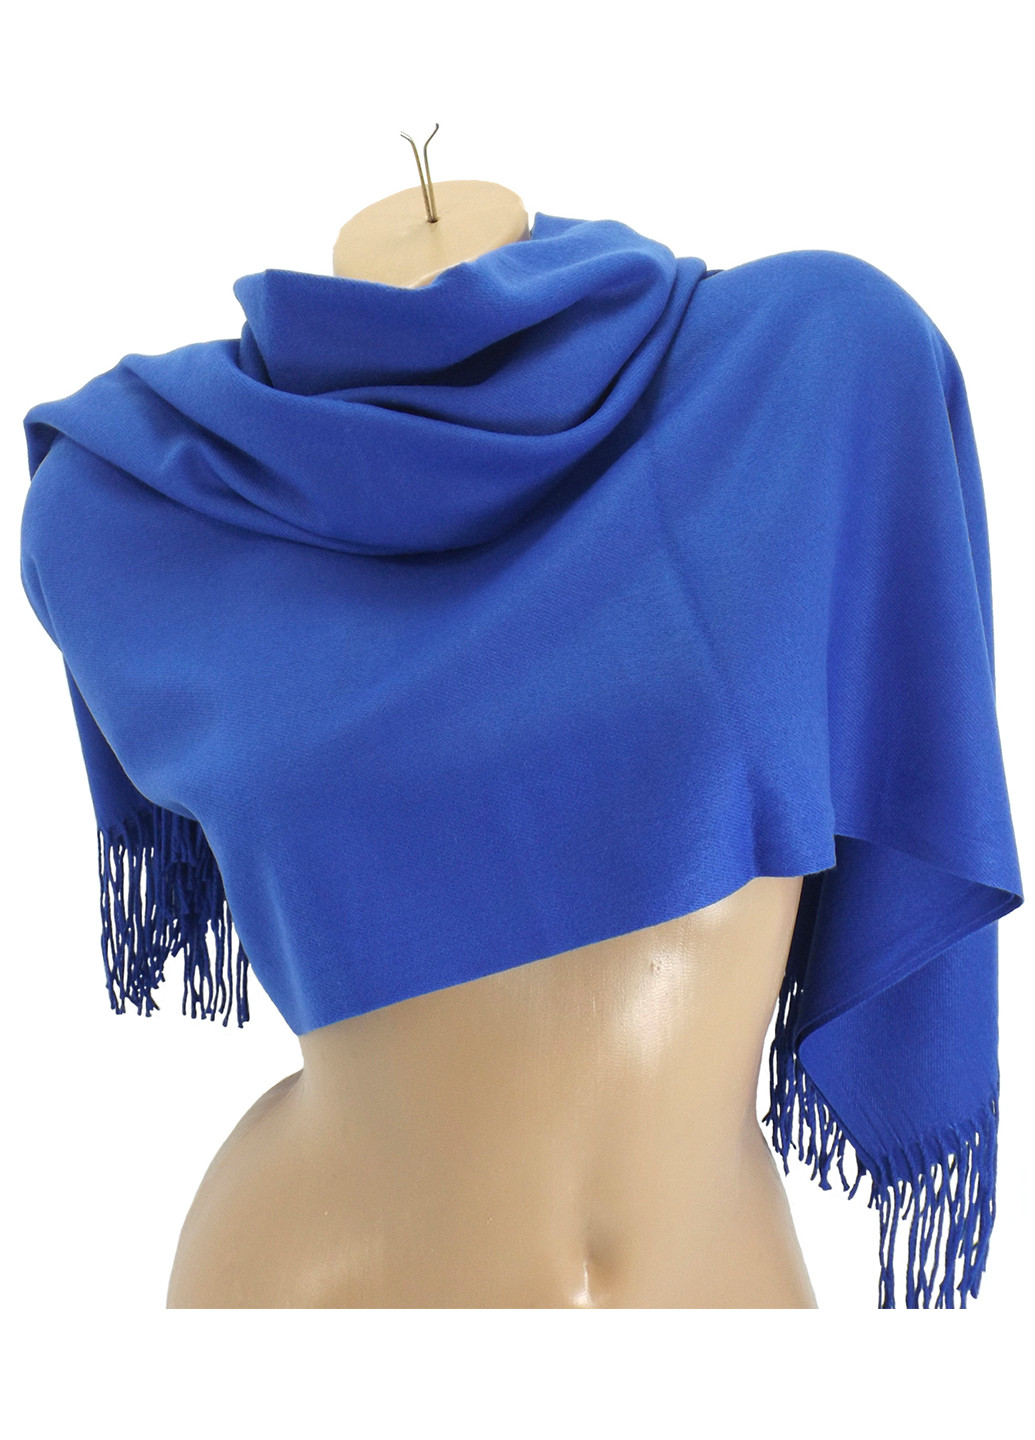 Жіночий кашеміровий шарф Синій LuxWear S47011 однотонний синій кежуал акрил, віскоза, кашемір